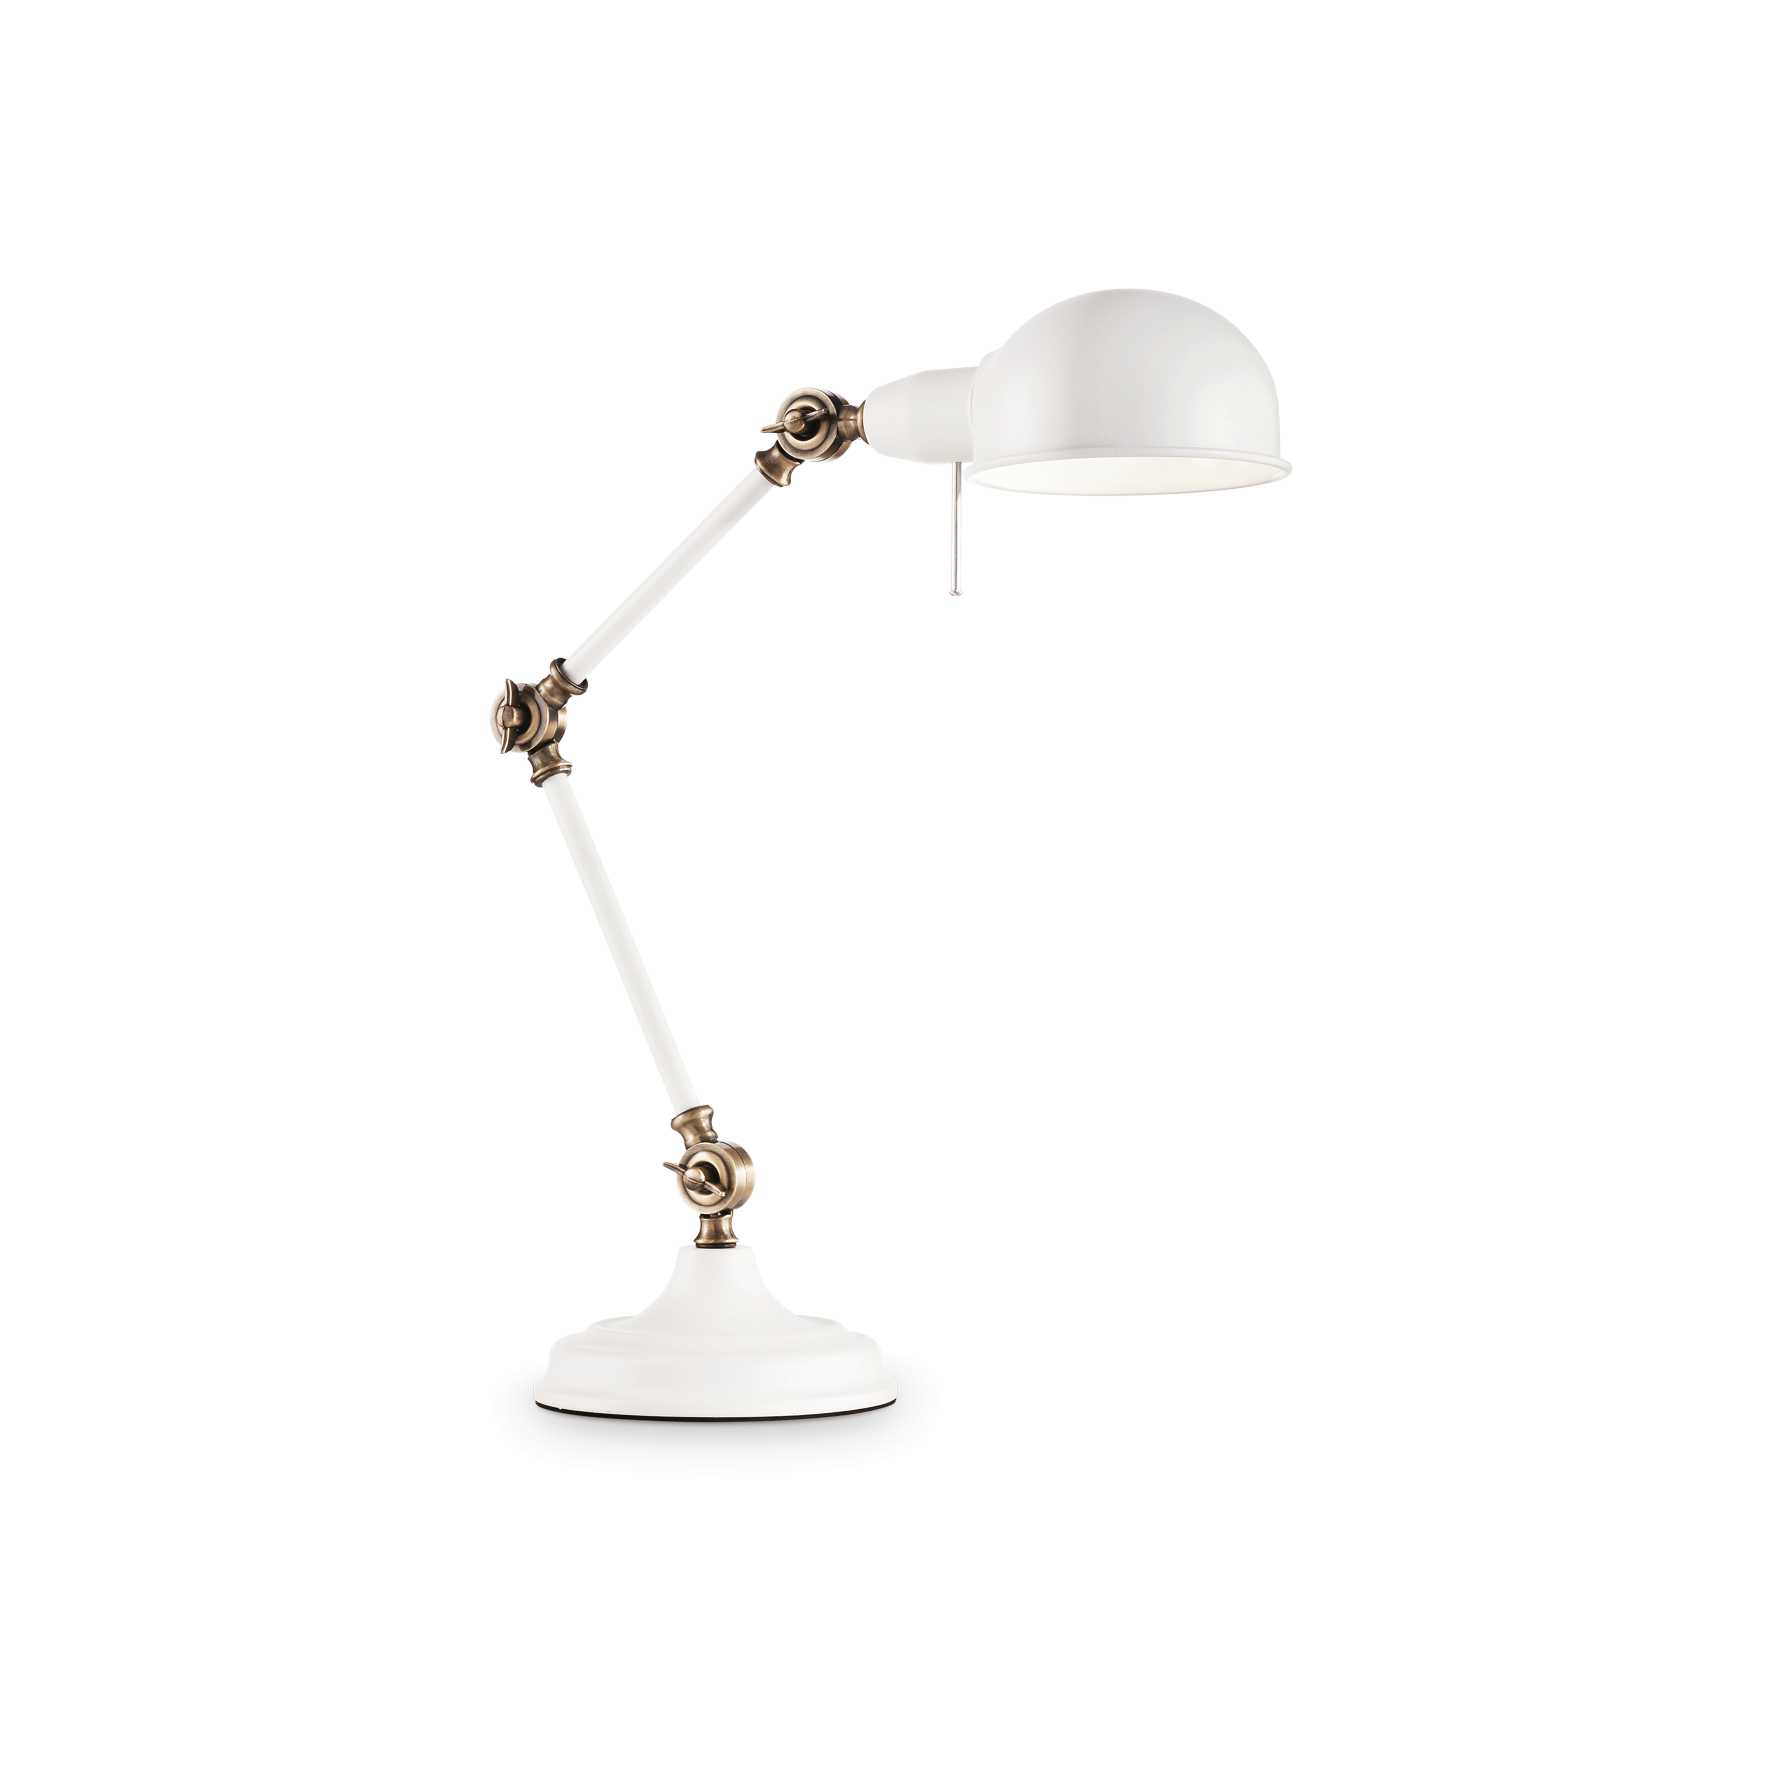 AD hotelska oprema Stolna lampa Truman tl1- Bijele boje slika proizvoda